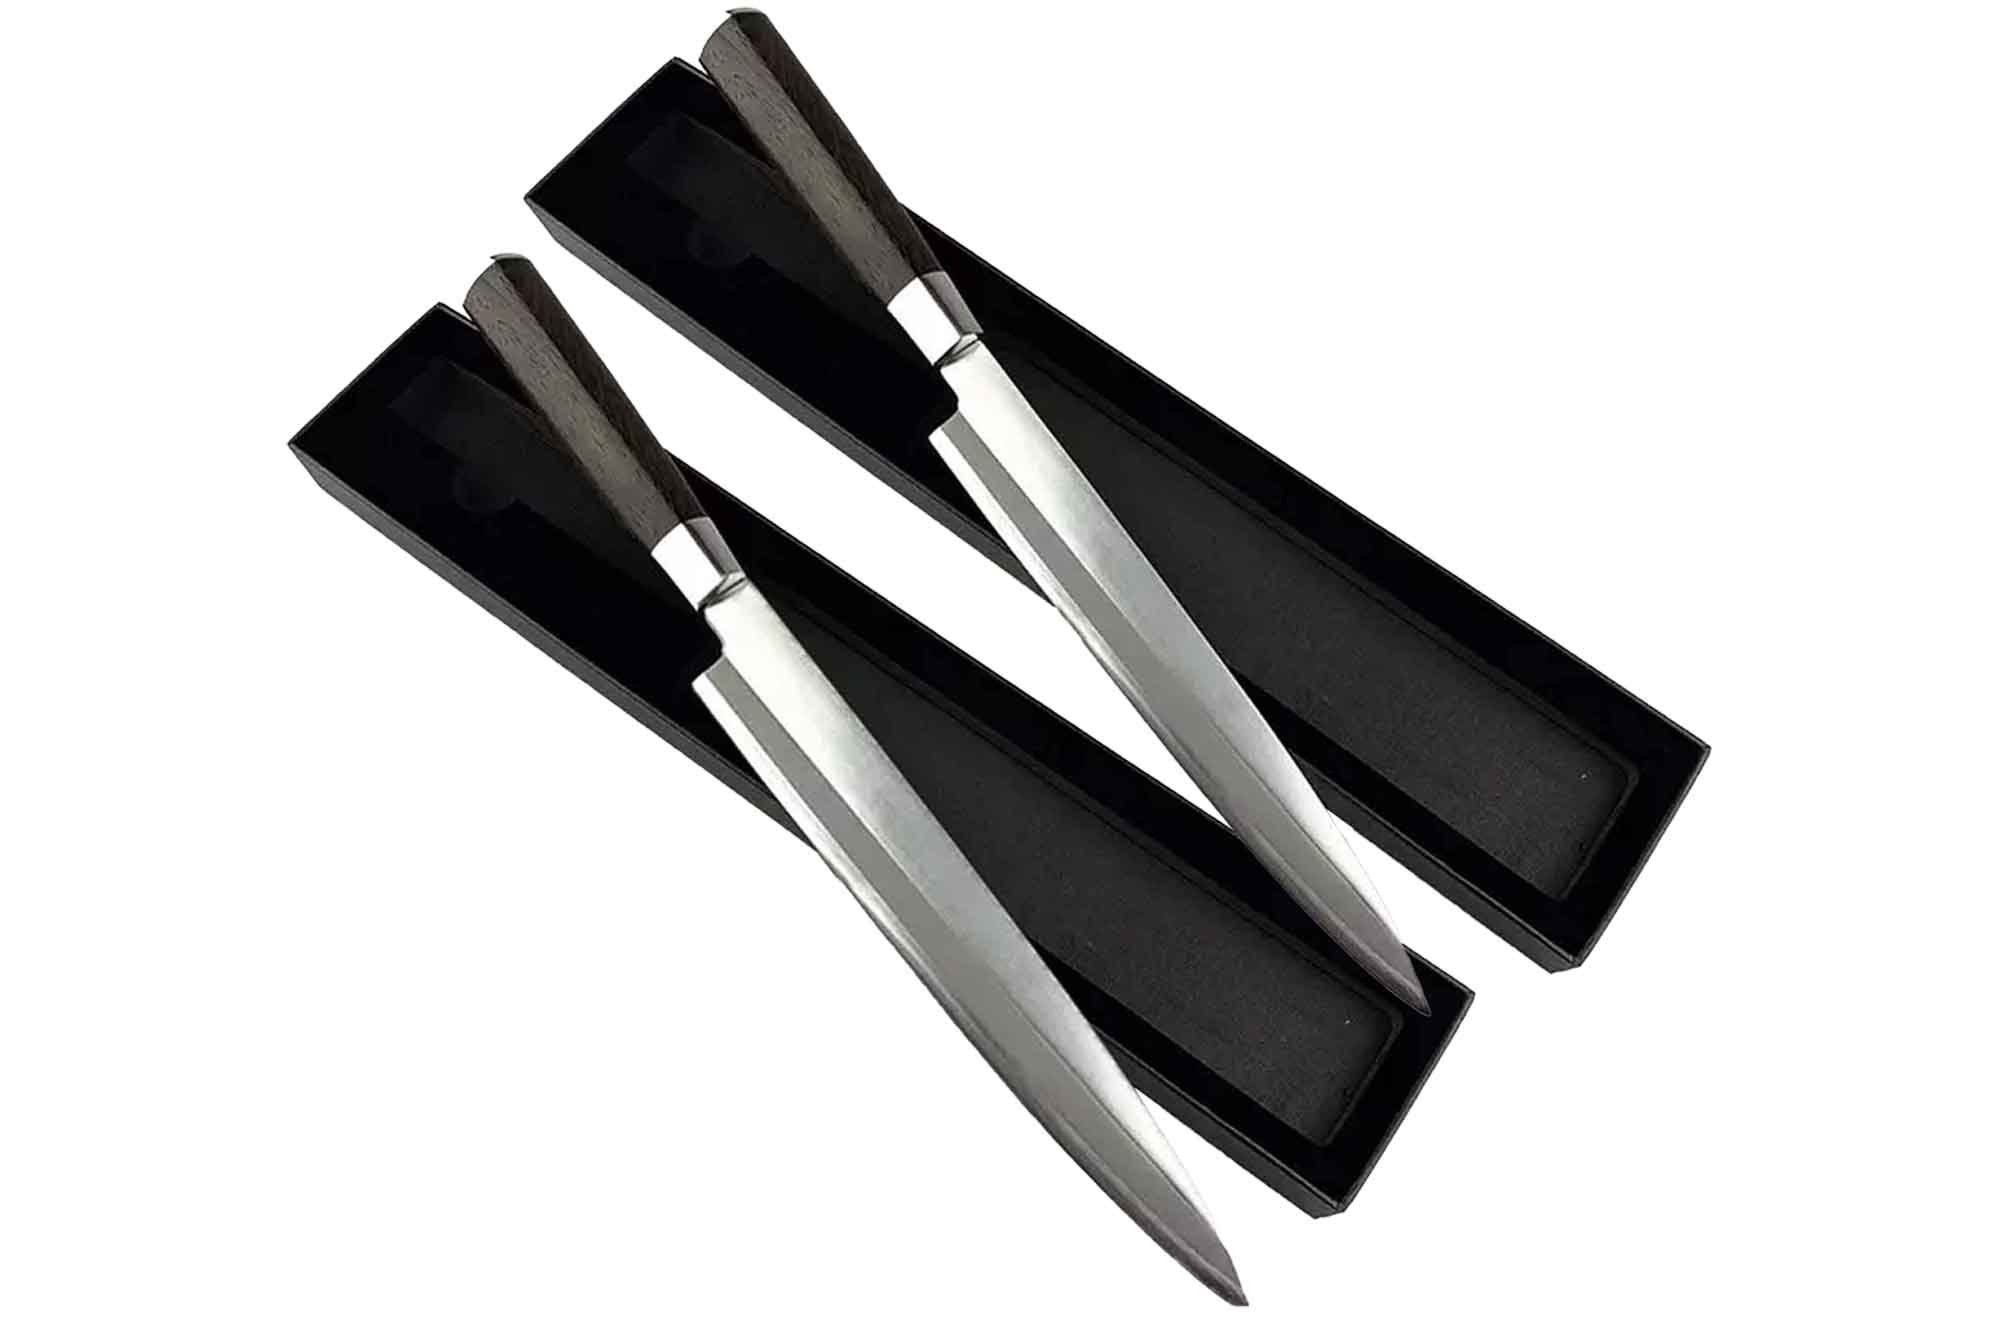 Muxel Kochmesser Yanagiba Messer das Sashimi knives zum Schneiden von Fisch und Sushi, einseitig geschliffen